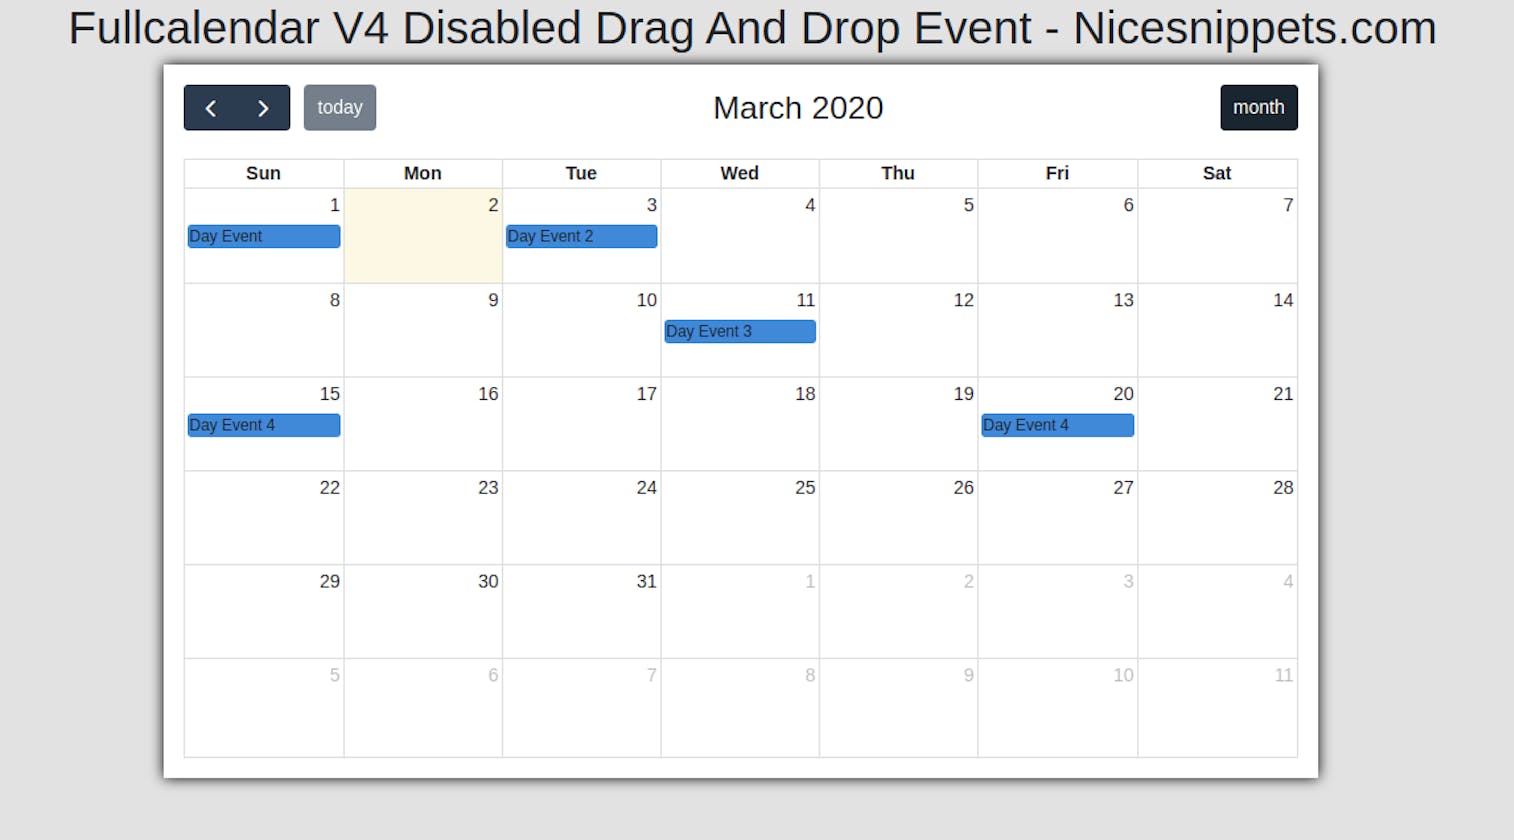 Fullcalendar V4 Disabled Drag And Drop Event